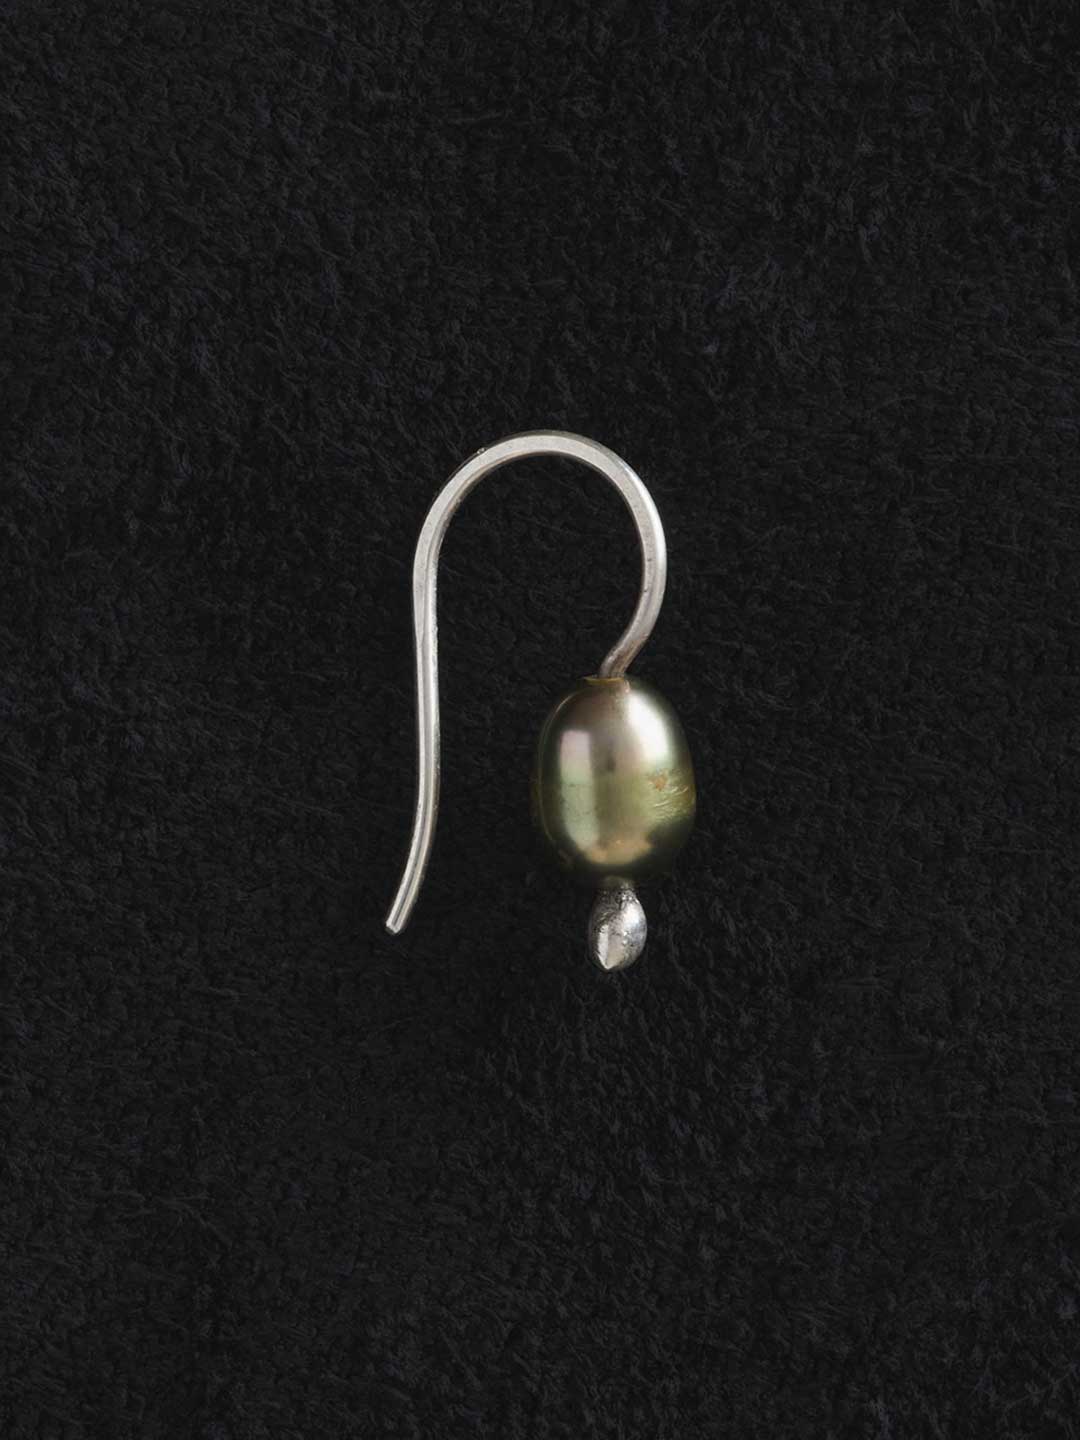 Mermaid Single Pierced Earring - Green